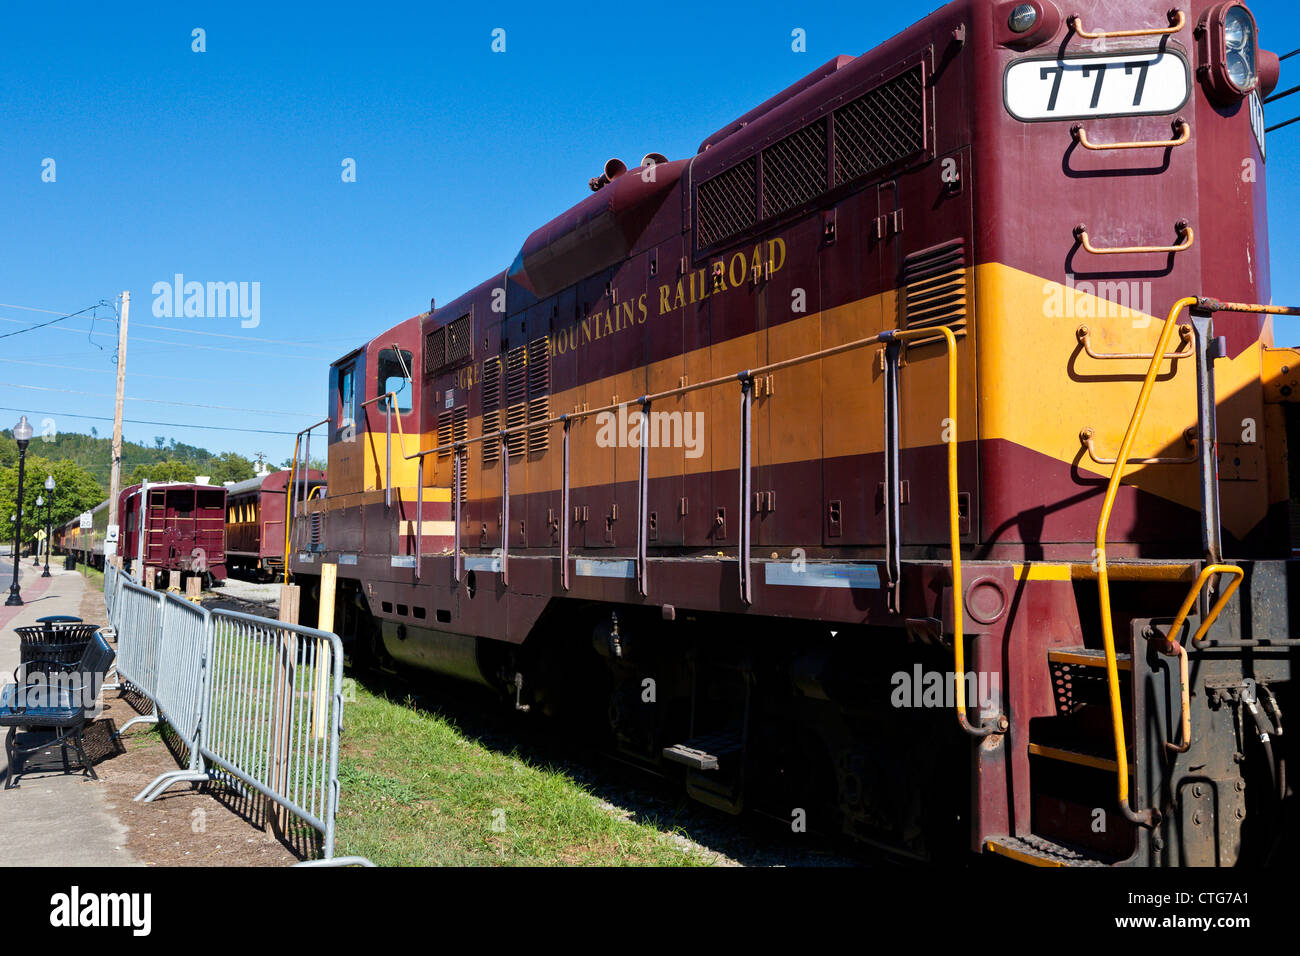 Great Smoky Mountain Railway locomotive diesel-électrique # 777 de Bryson City, Caroline du Nord. Banque D'Images